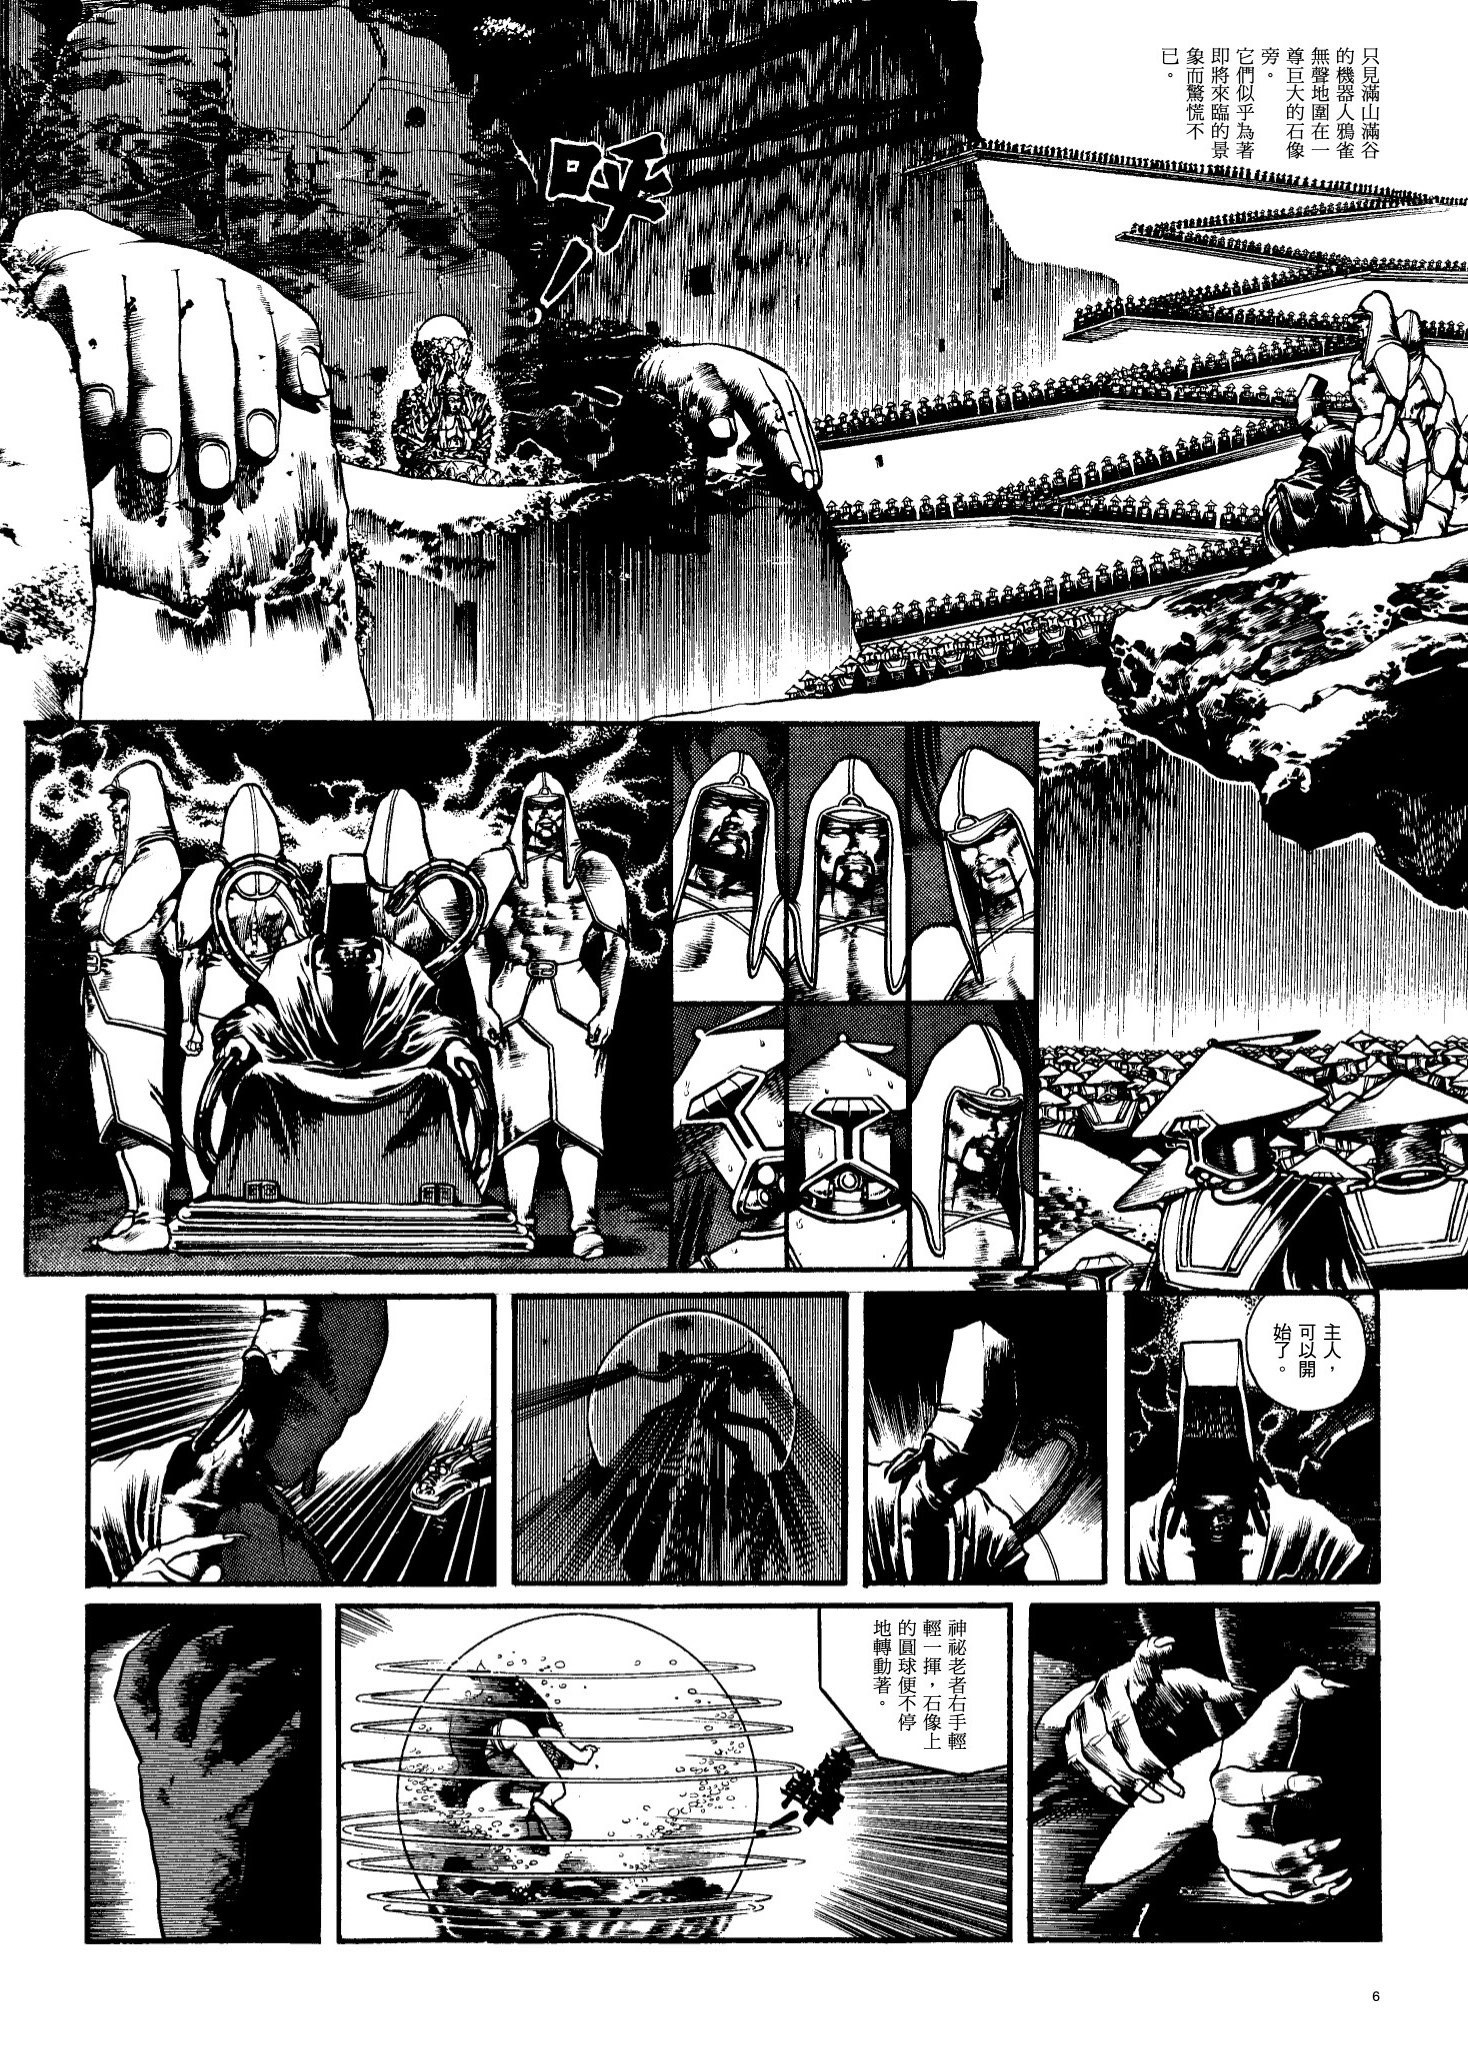 鄭問《戰士黑豹 2》漫畫將於 4 月在台出版上市